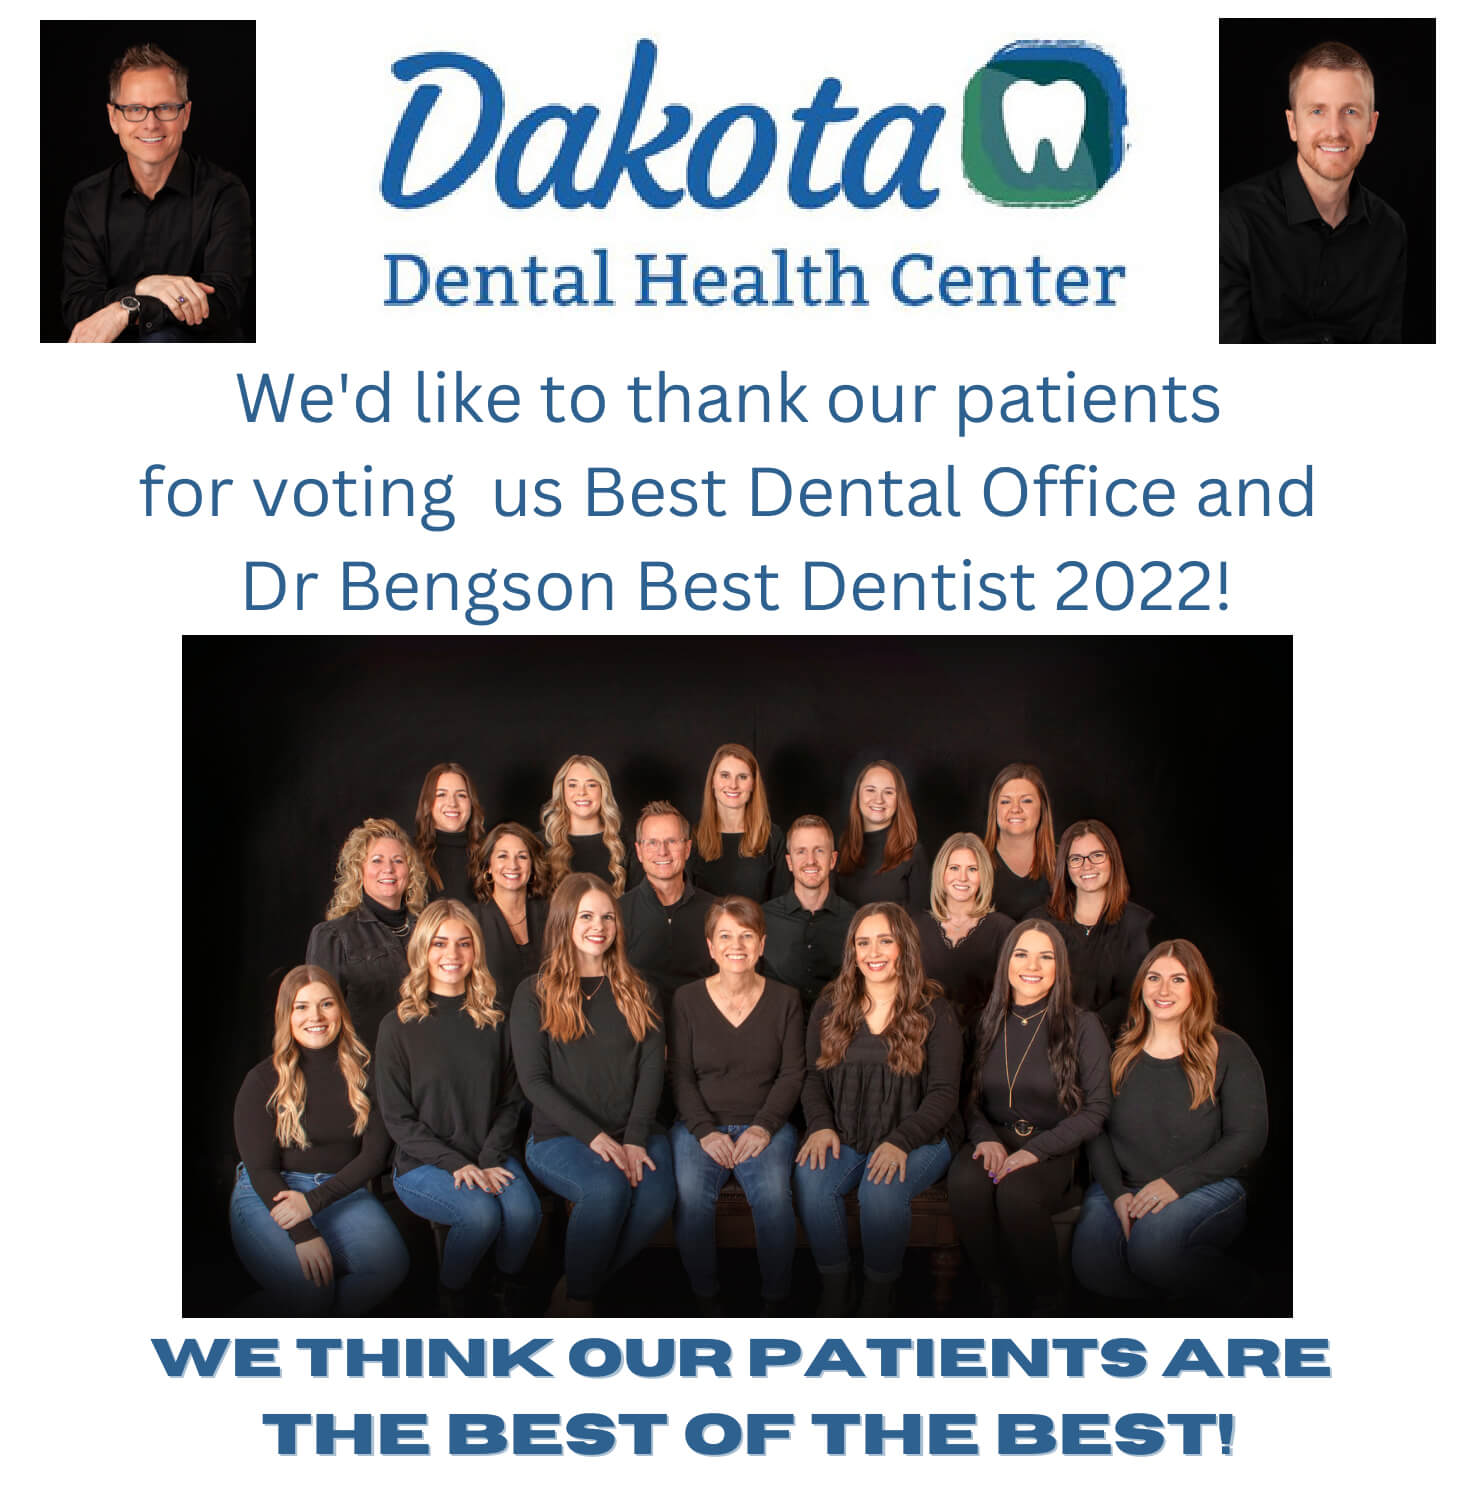 Dakota Dental Health